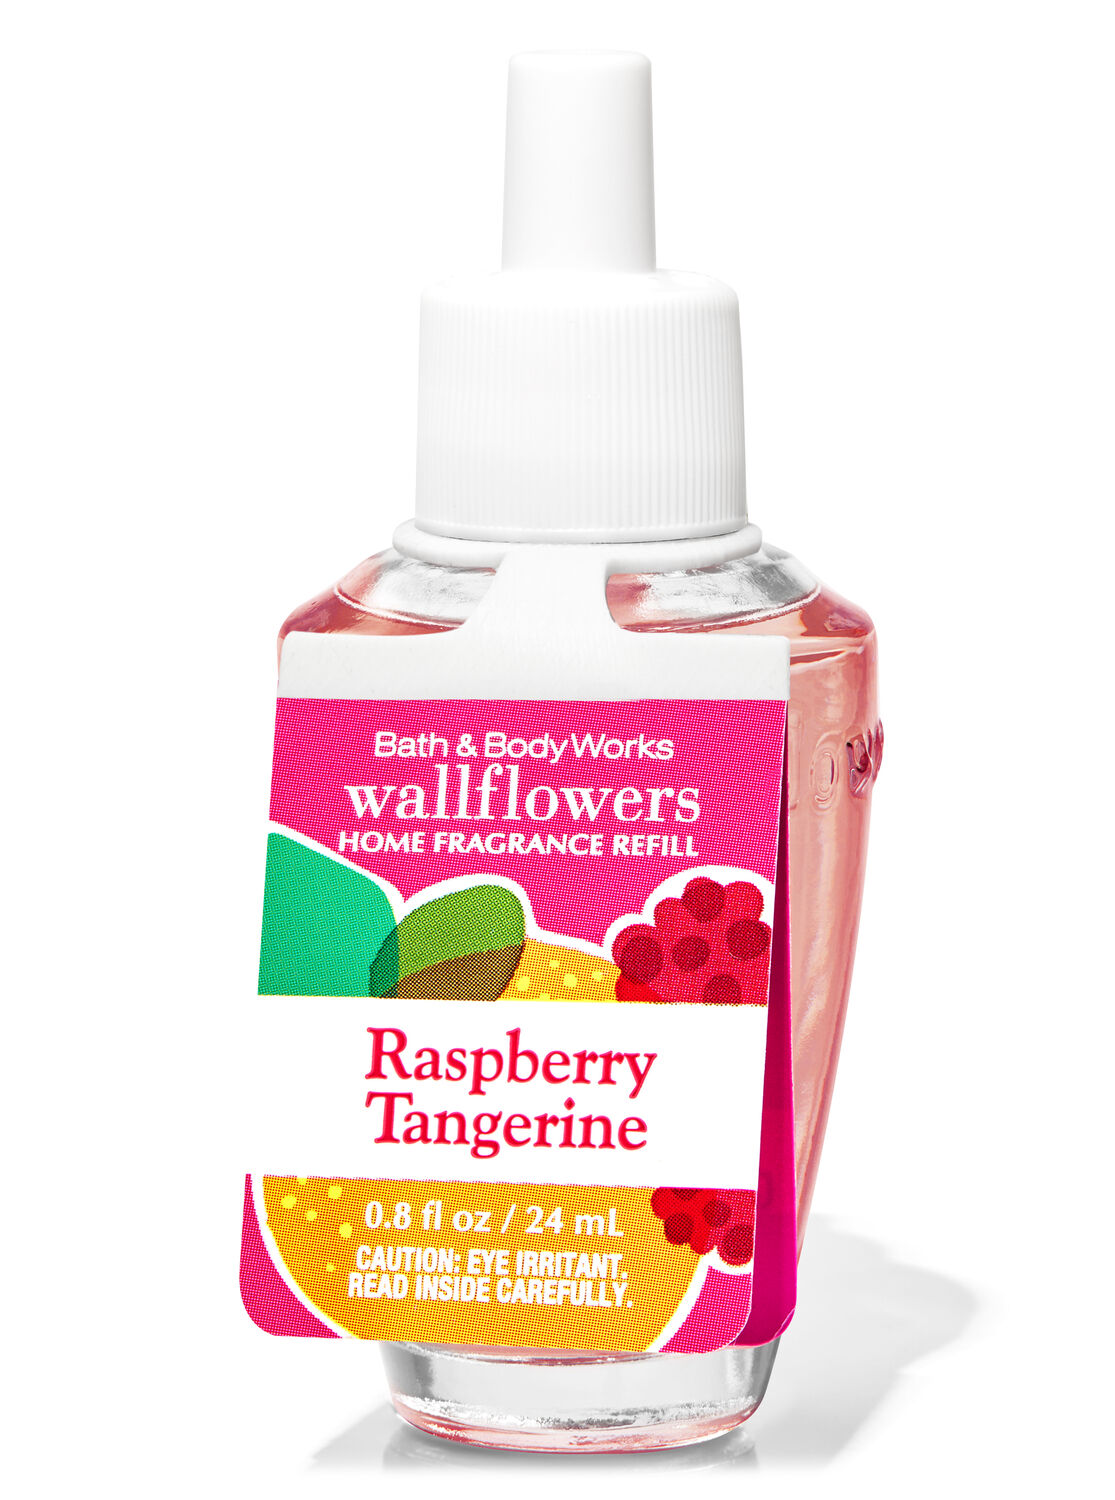 Raspberry Tangerine Wallflowers Fragrance Refill